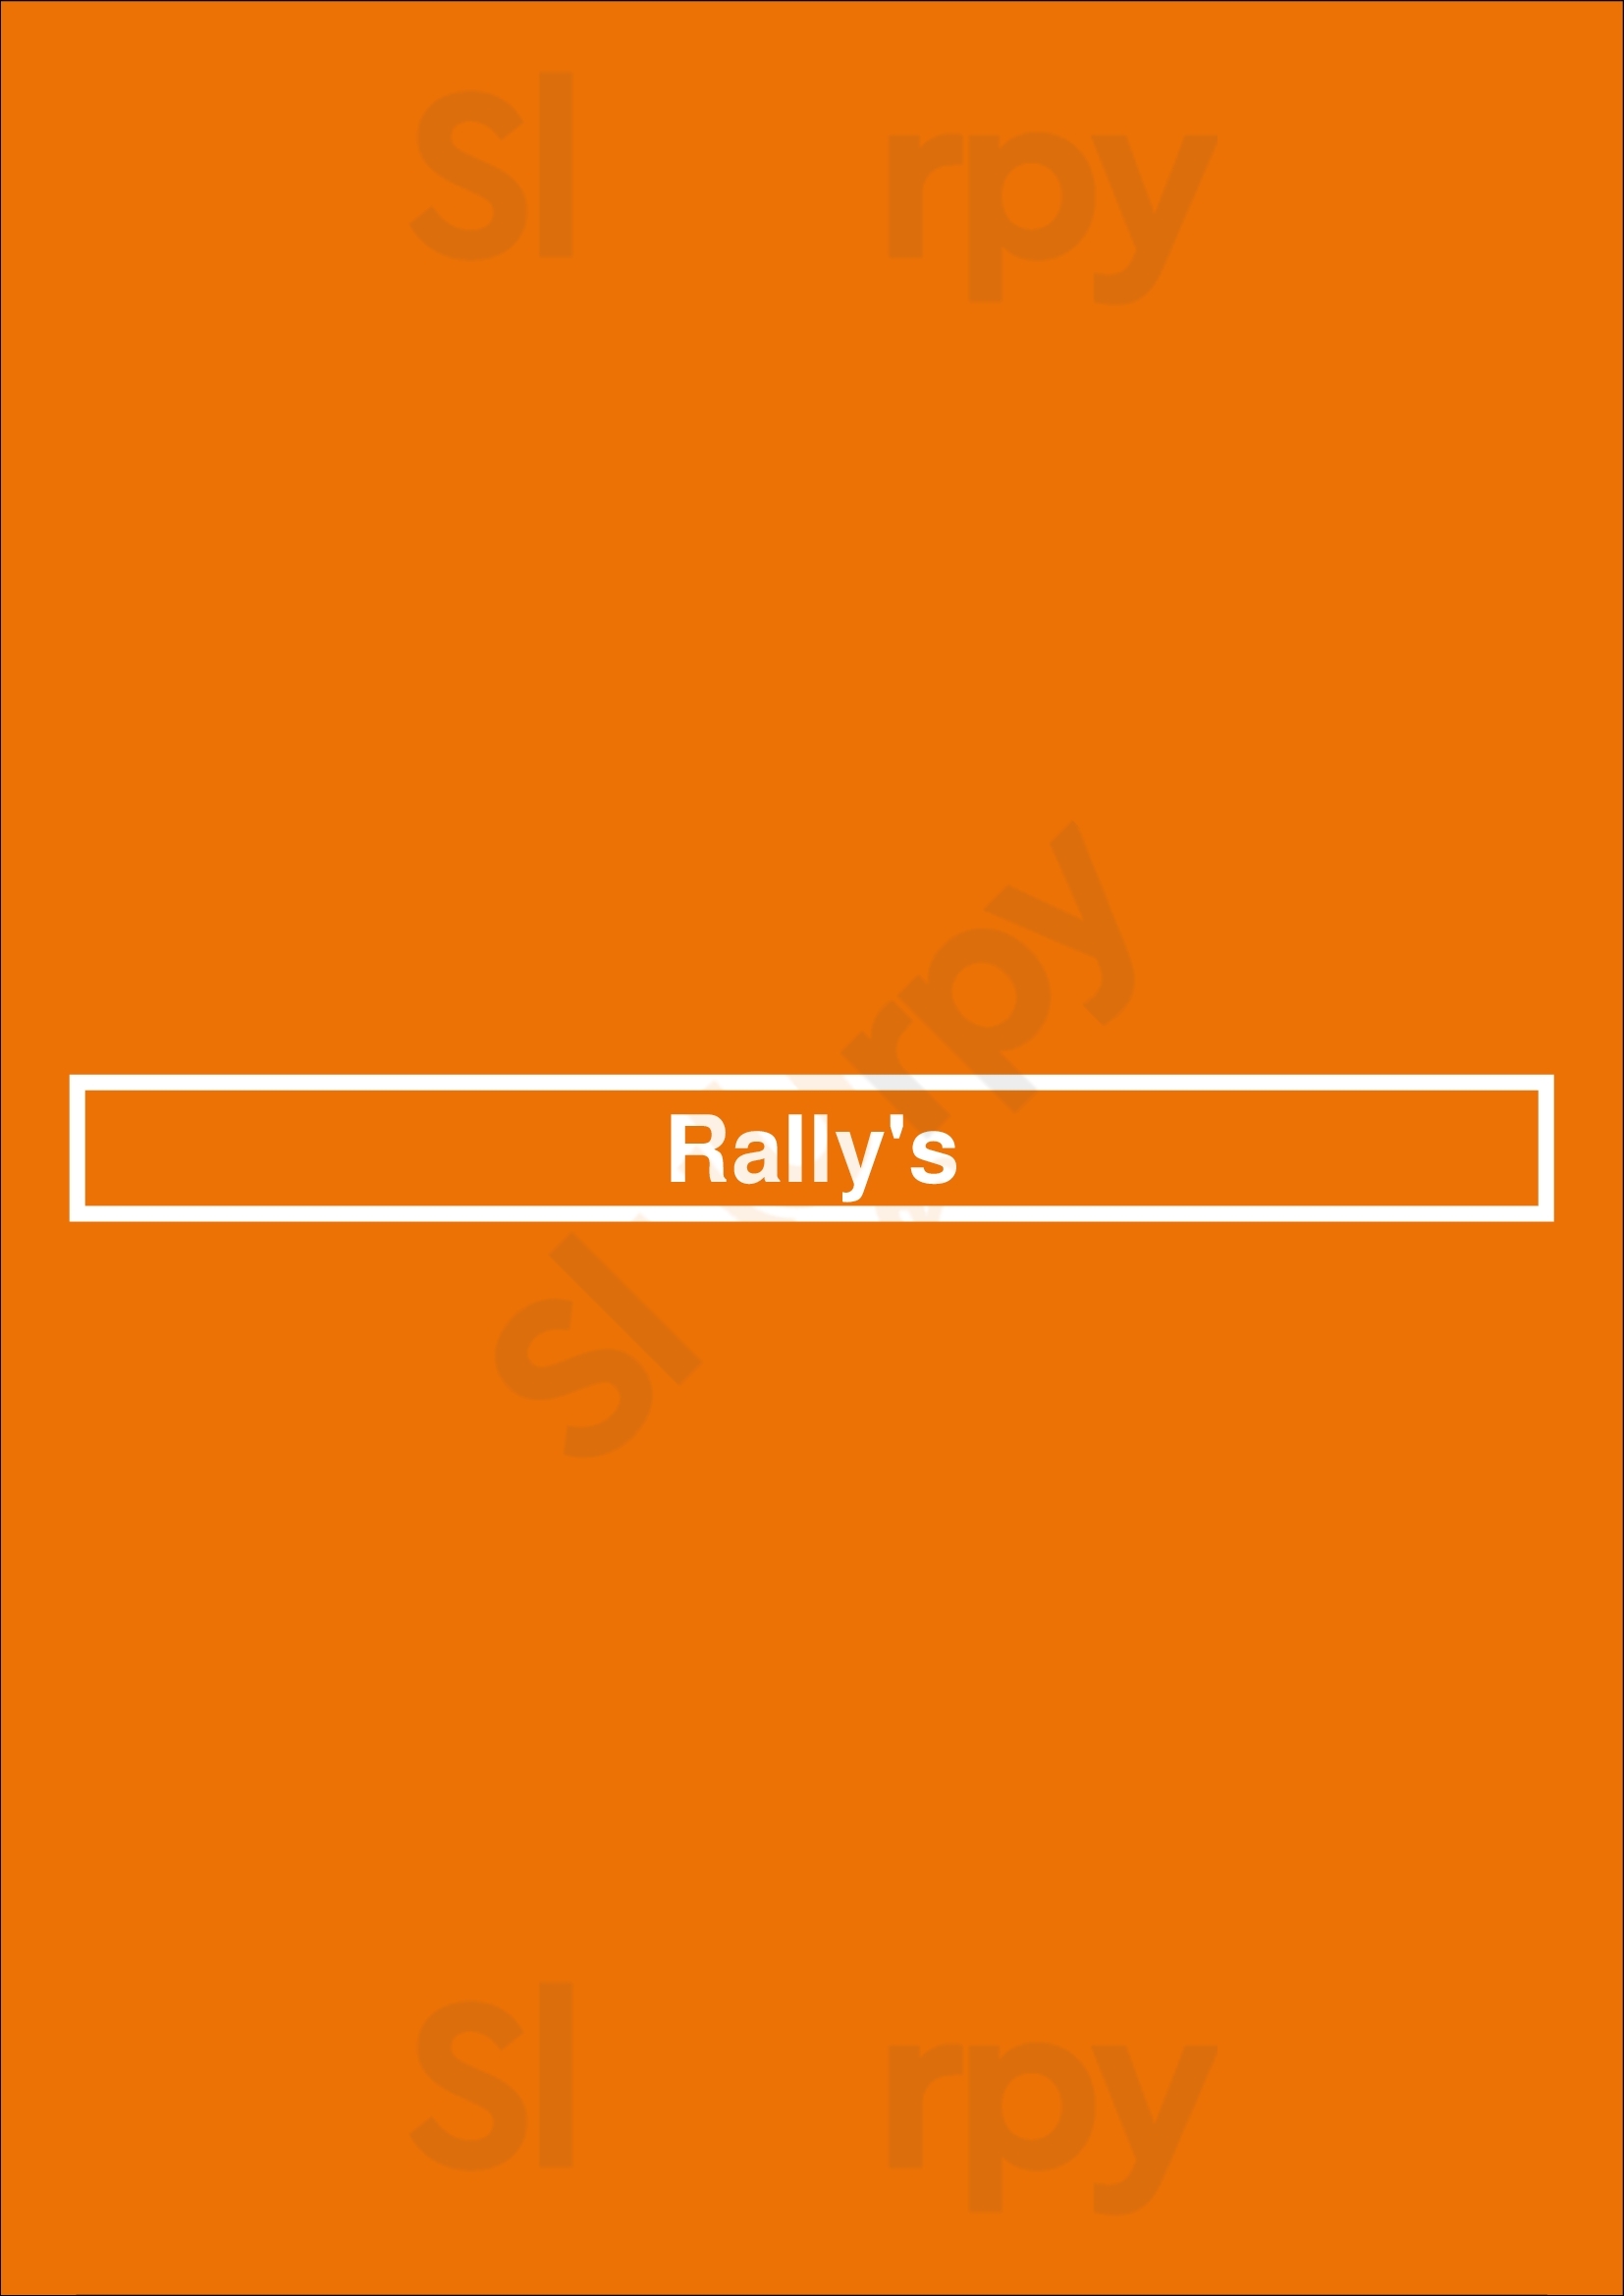 Rally's Saint Louis Menu - 1